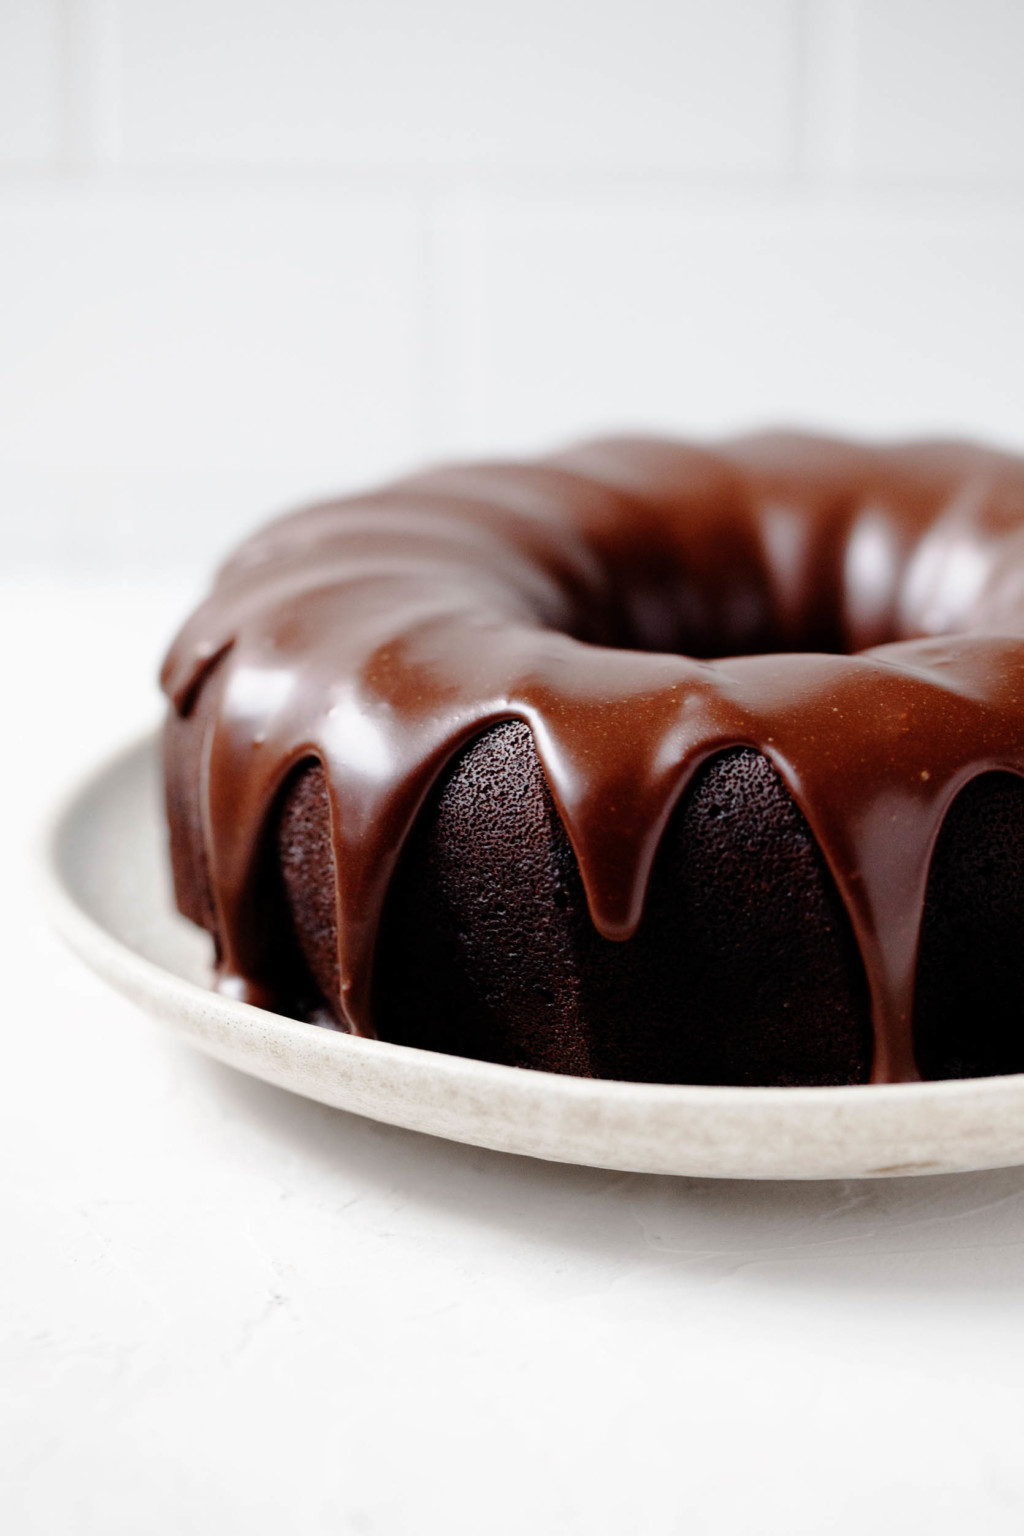 vegan chocolate bundt cake 2 1024x1536 2.jpg